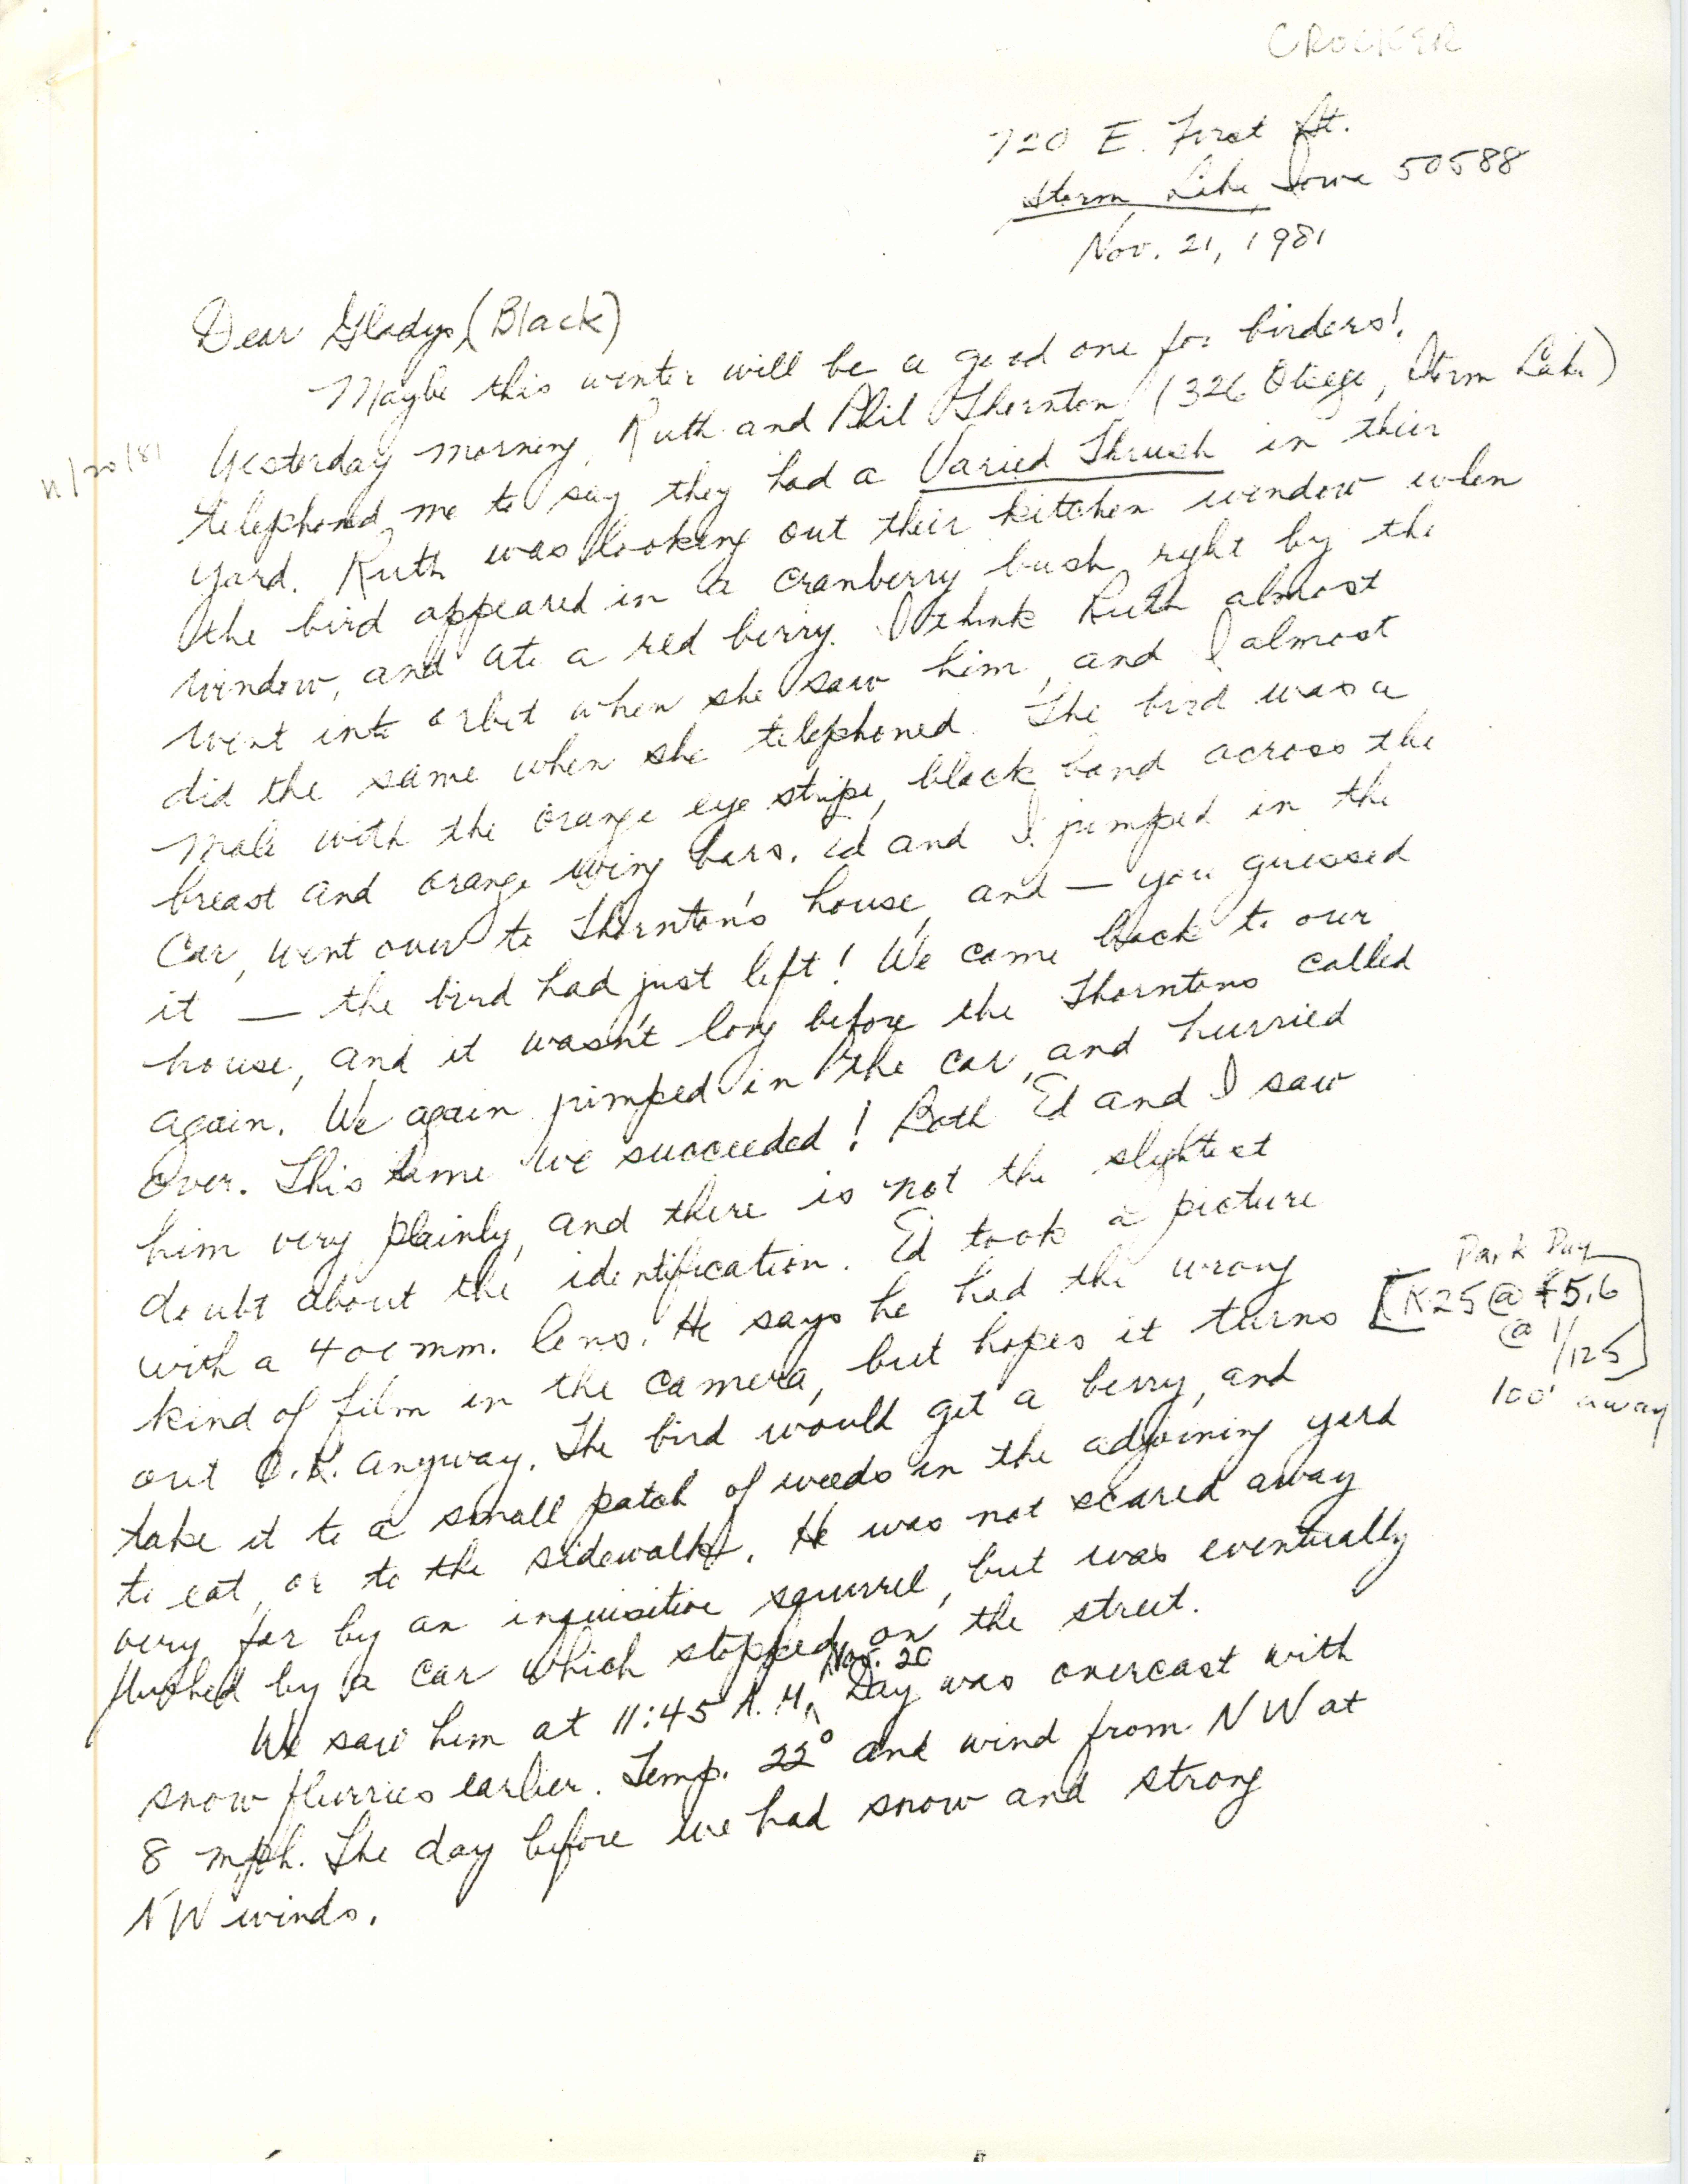 Virginia R. Crocker letter to Gladys Black regarding bird sighting, November 21, 1981